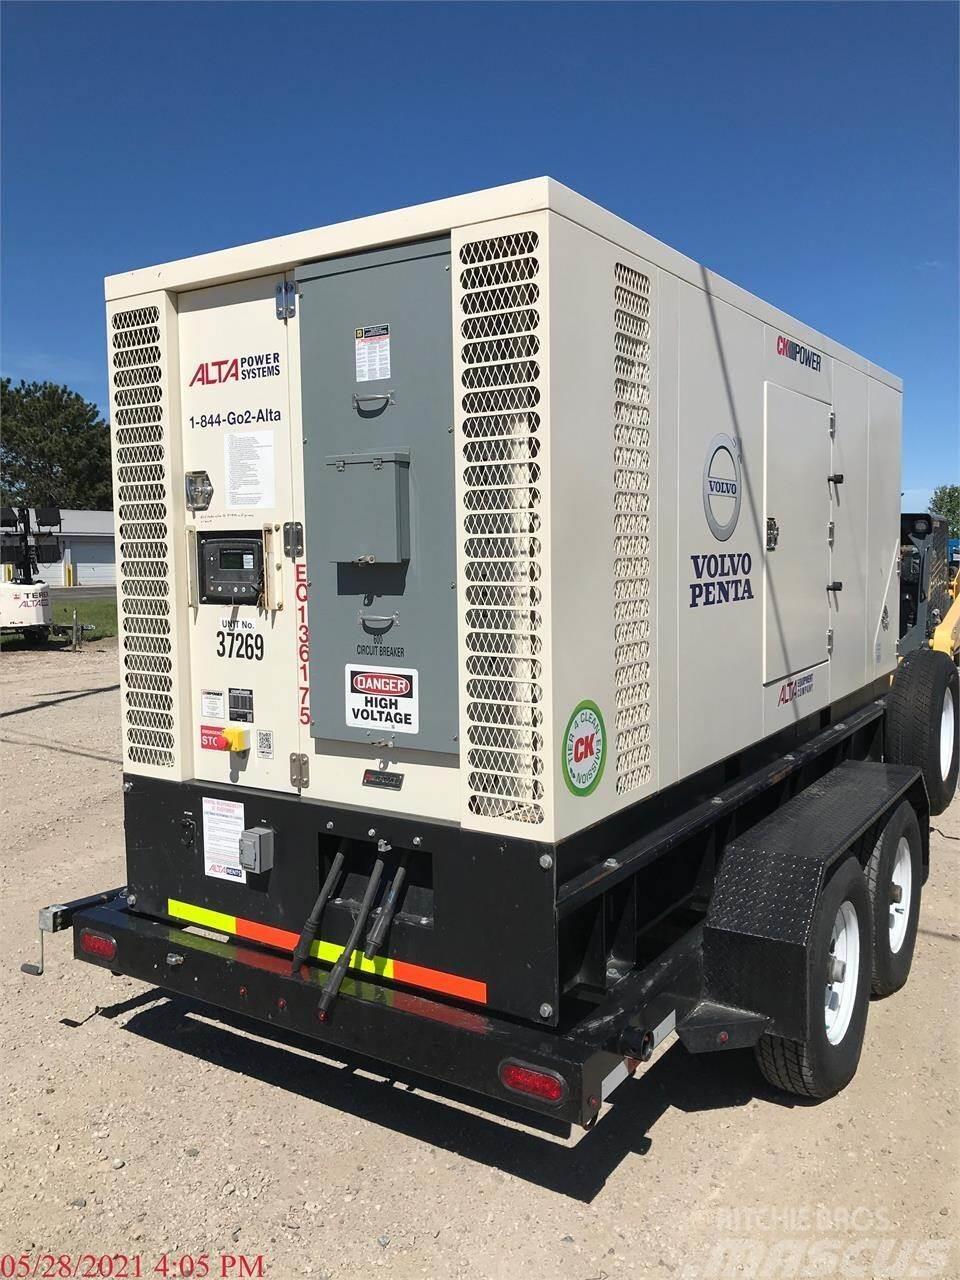  CK POWER 120 KW Övriga generatorer